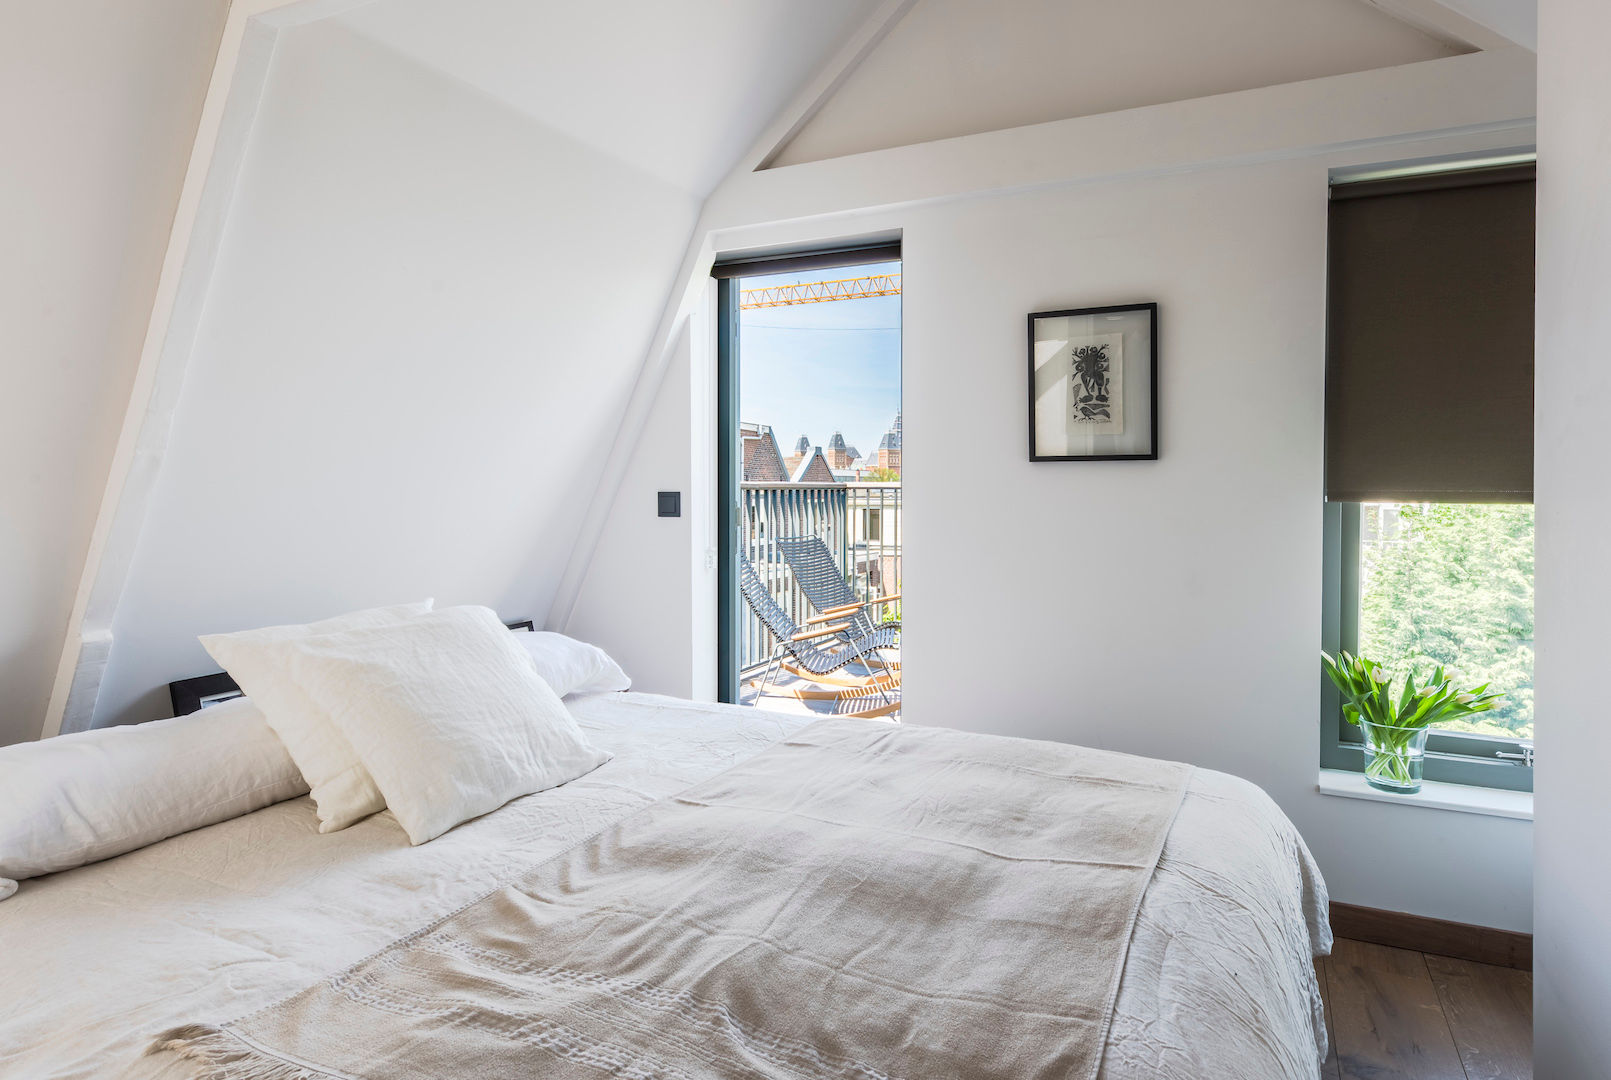 Loft bedroom homify Cuartos de estilo moderno Bed,attic bedroom,loft bedroom,small bedroom